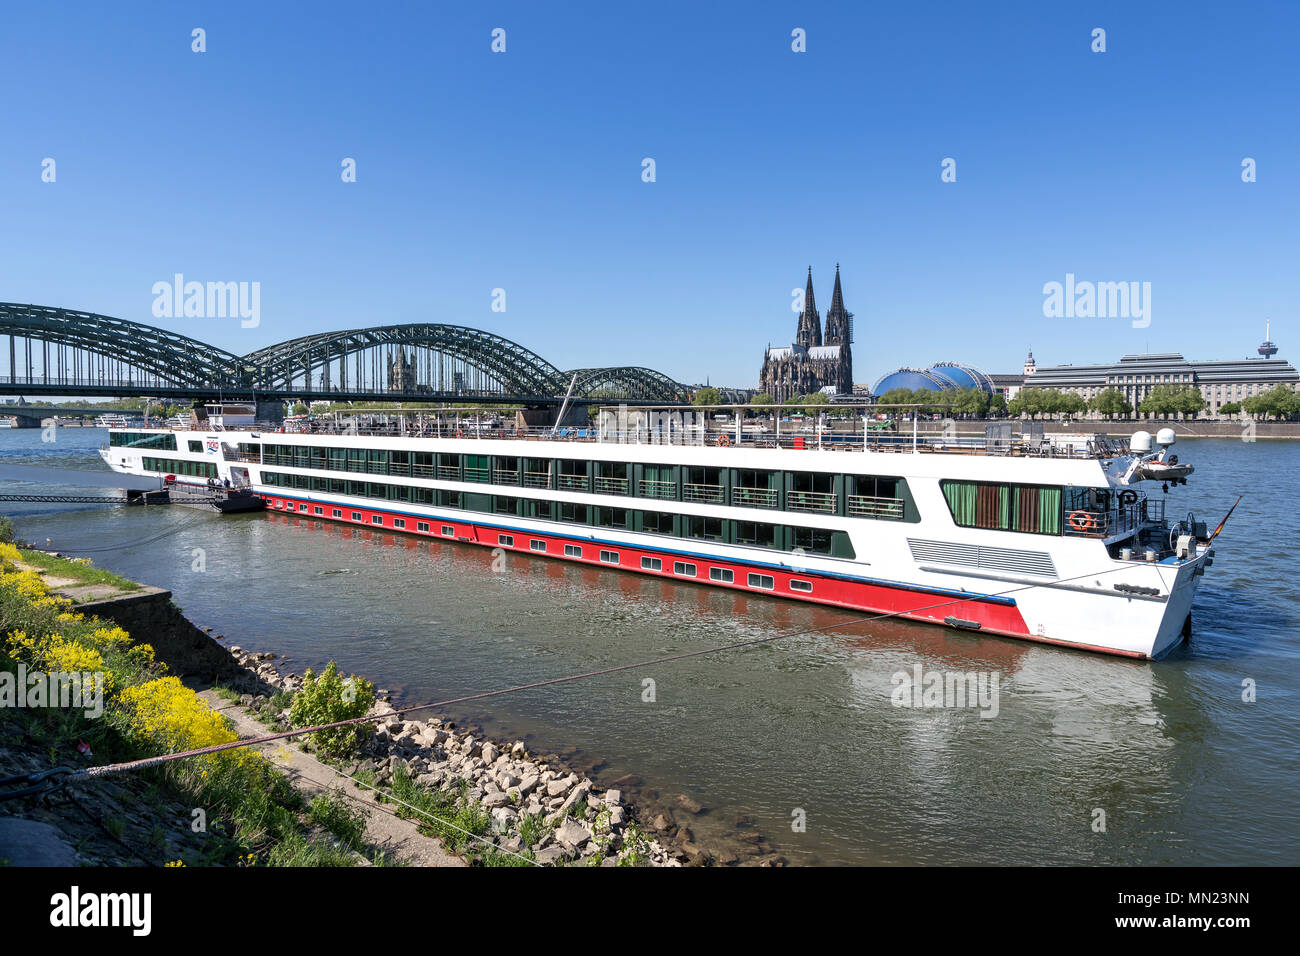 Rver Kreuzfahrt RHEIN MELODIE von Nicko Kreuzfahrten in Köln, Deutschland. RHEIN MELODIE hat eine Kapazität von 198 Passagieren und ist 132 m lang. Stockfoto